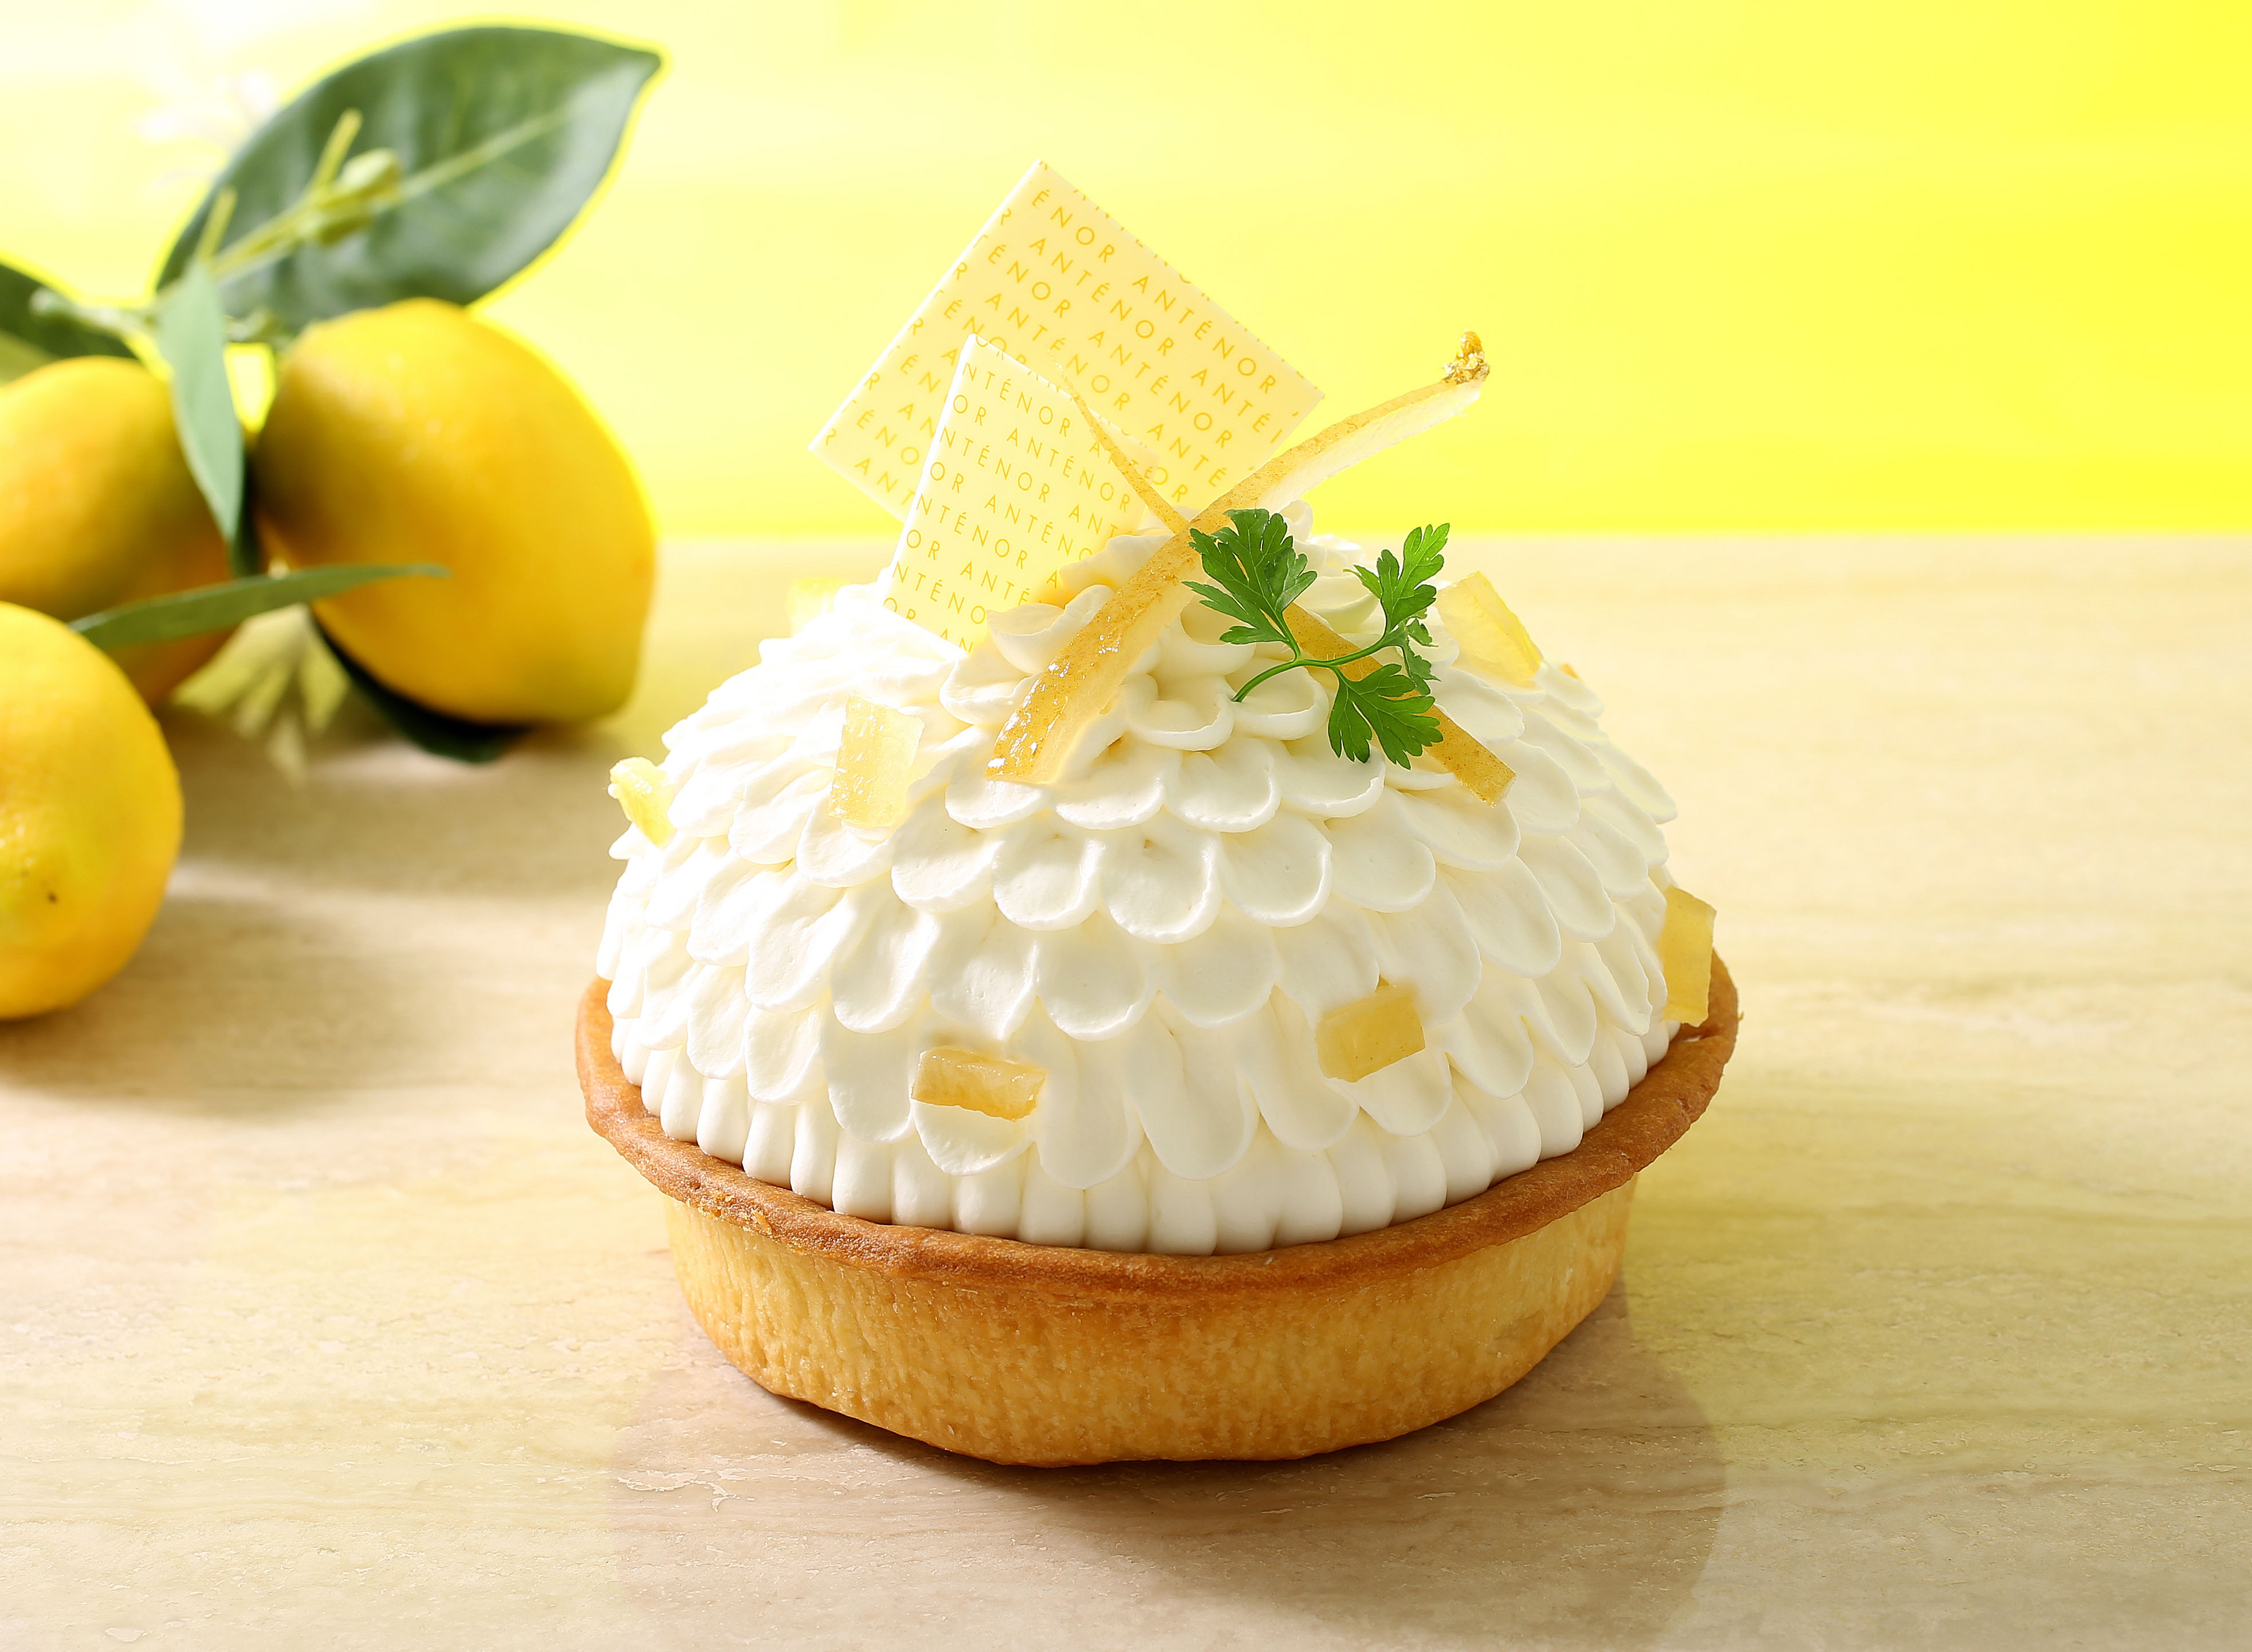 ときめく夏のレモンスイーツ！限定ケーキも焼き菓子も勢揃い「レモンフェスタ」をアンテノールで開催します。